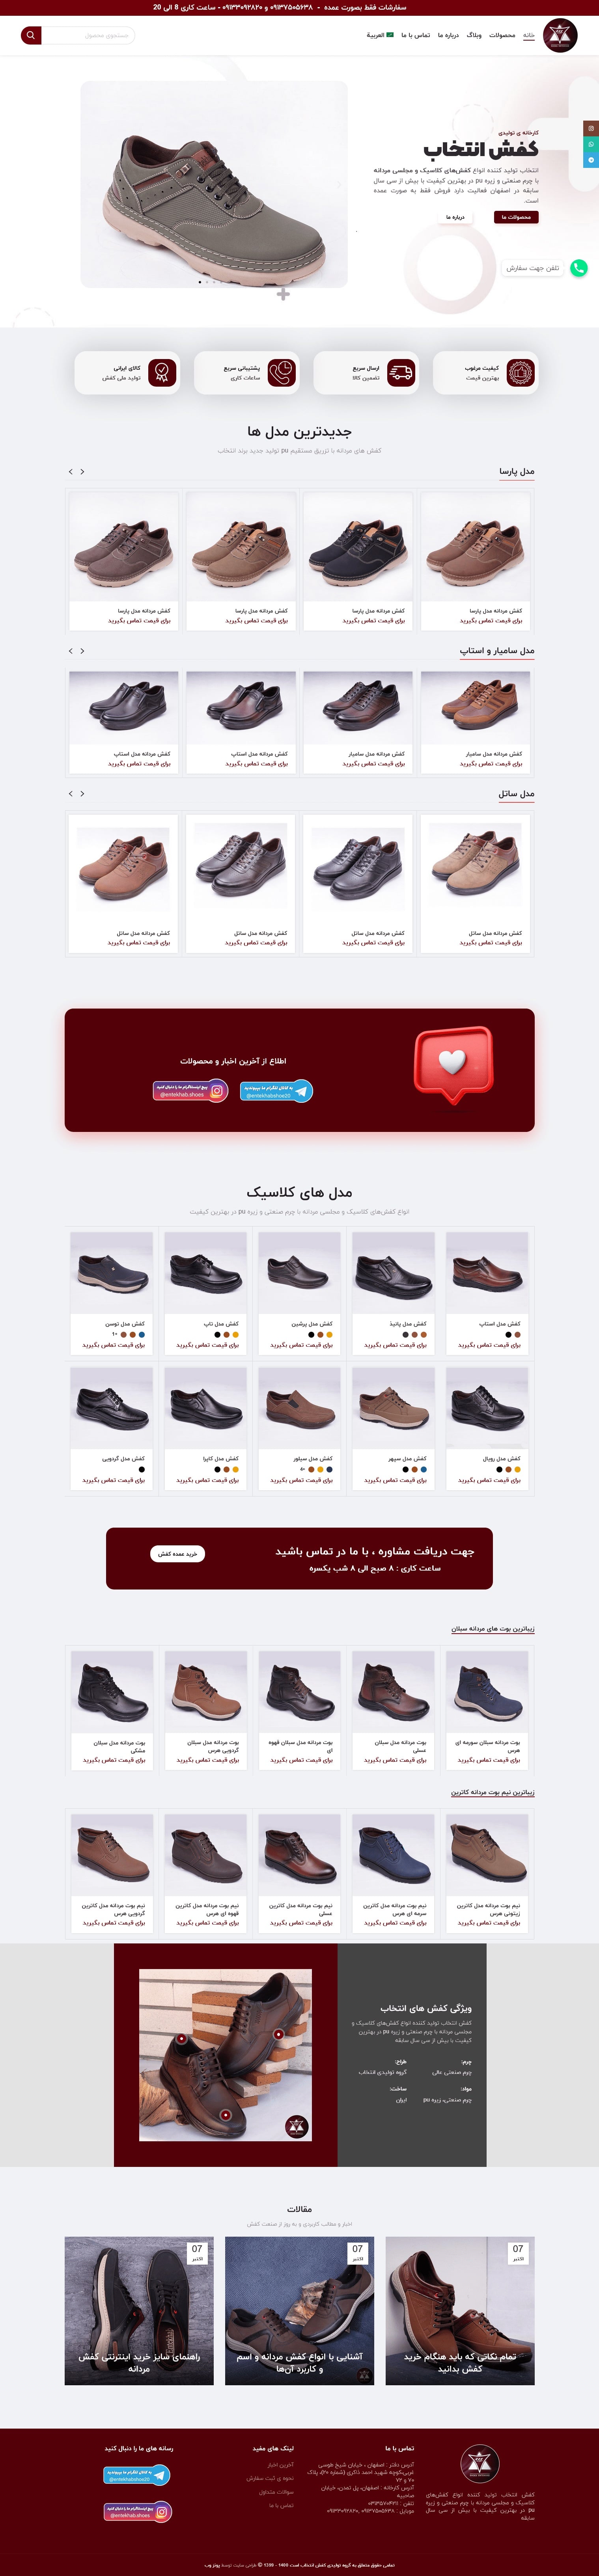 طراحی سایت کاتالوگ محصولات کفش انتخاب